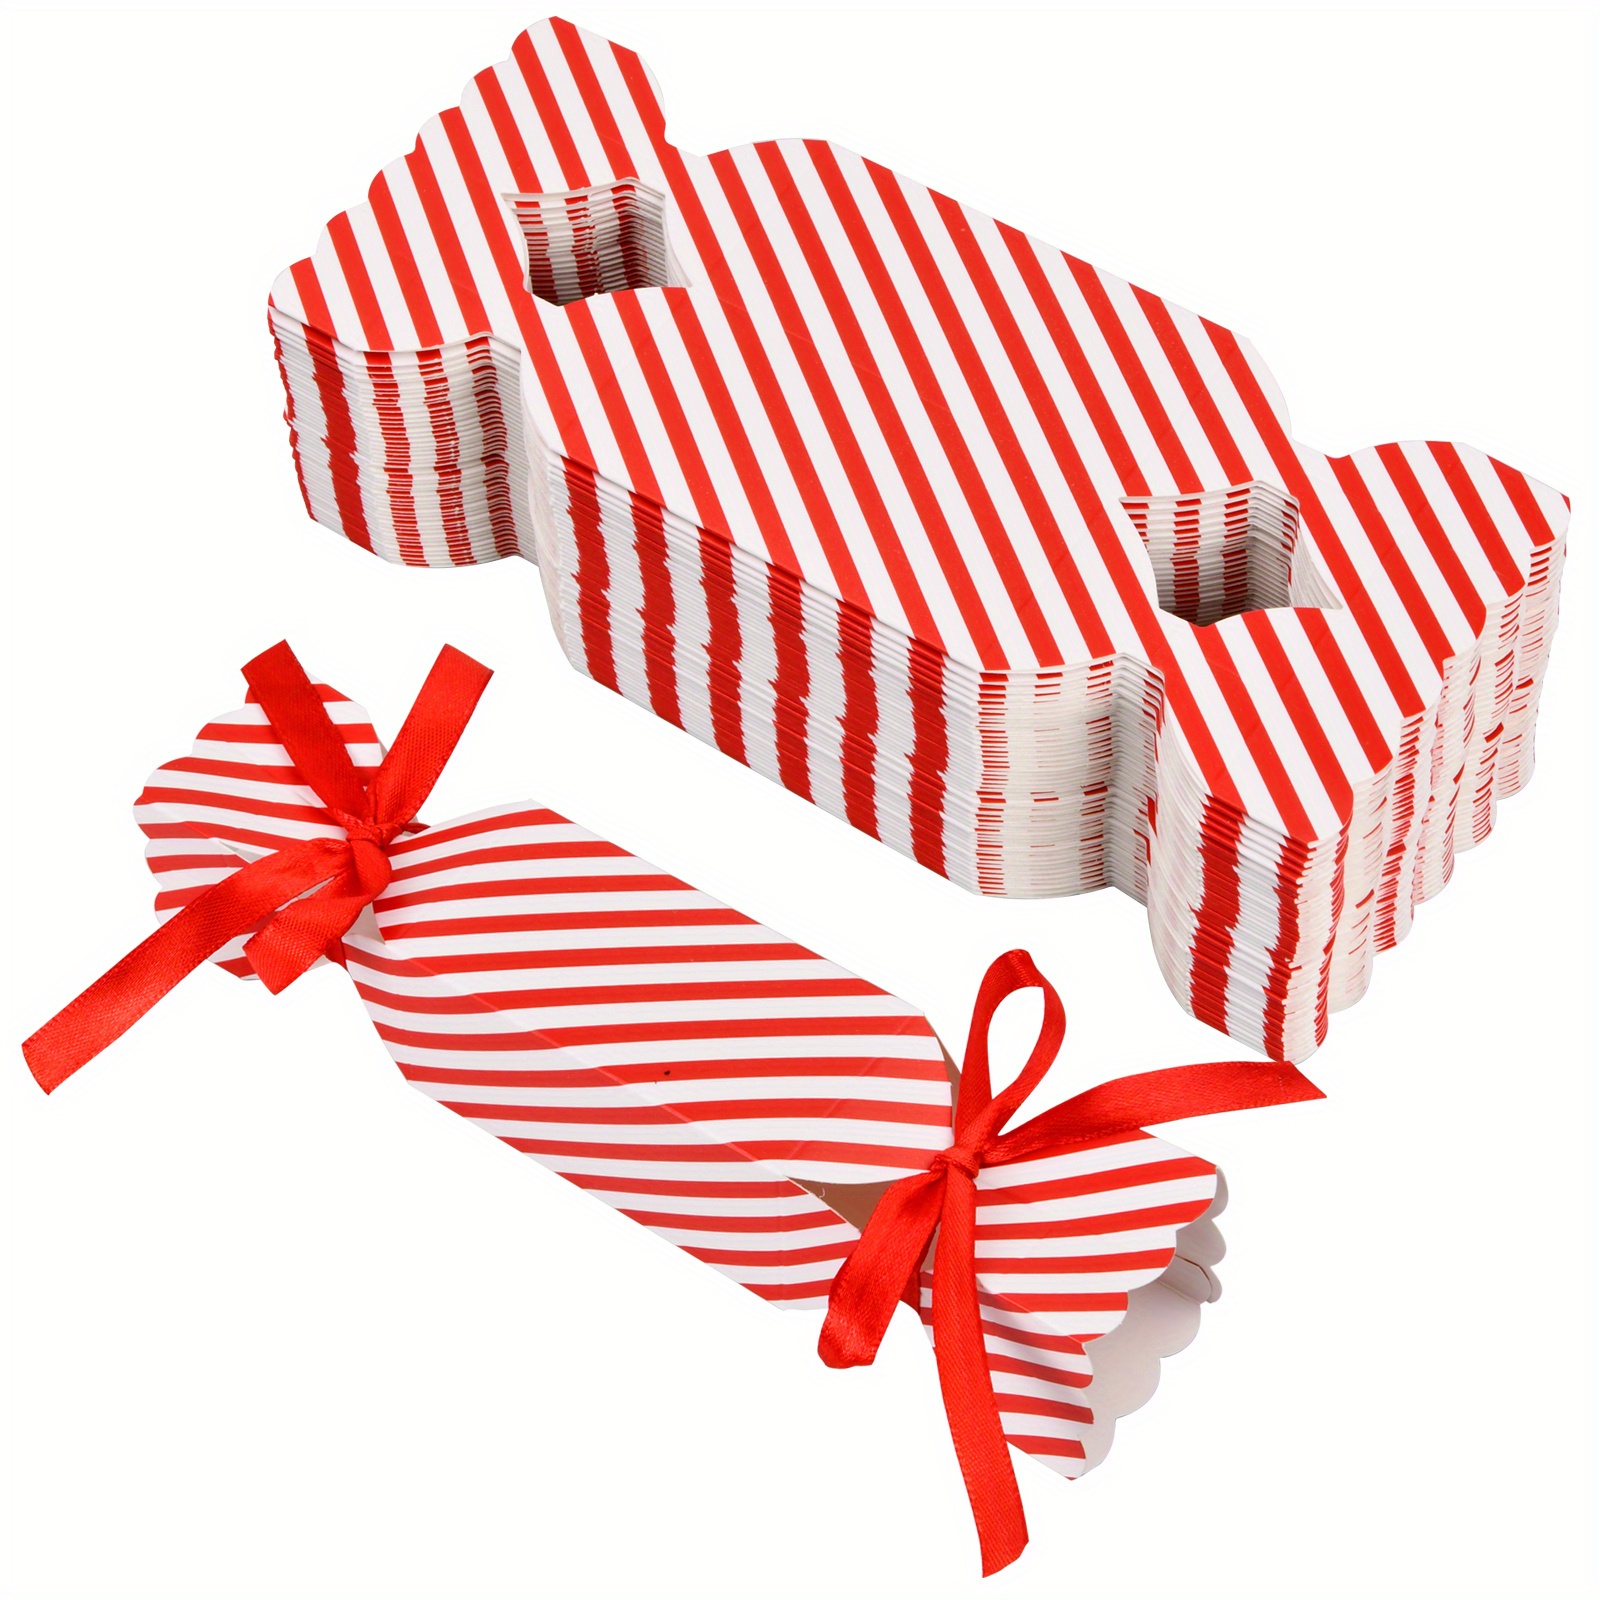 JOUR DE L'AN 3Pcs contenants de bonbons pour cadeaux Boîte Cadeau